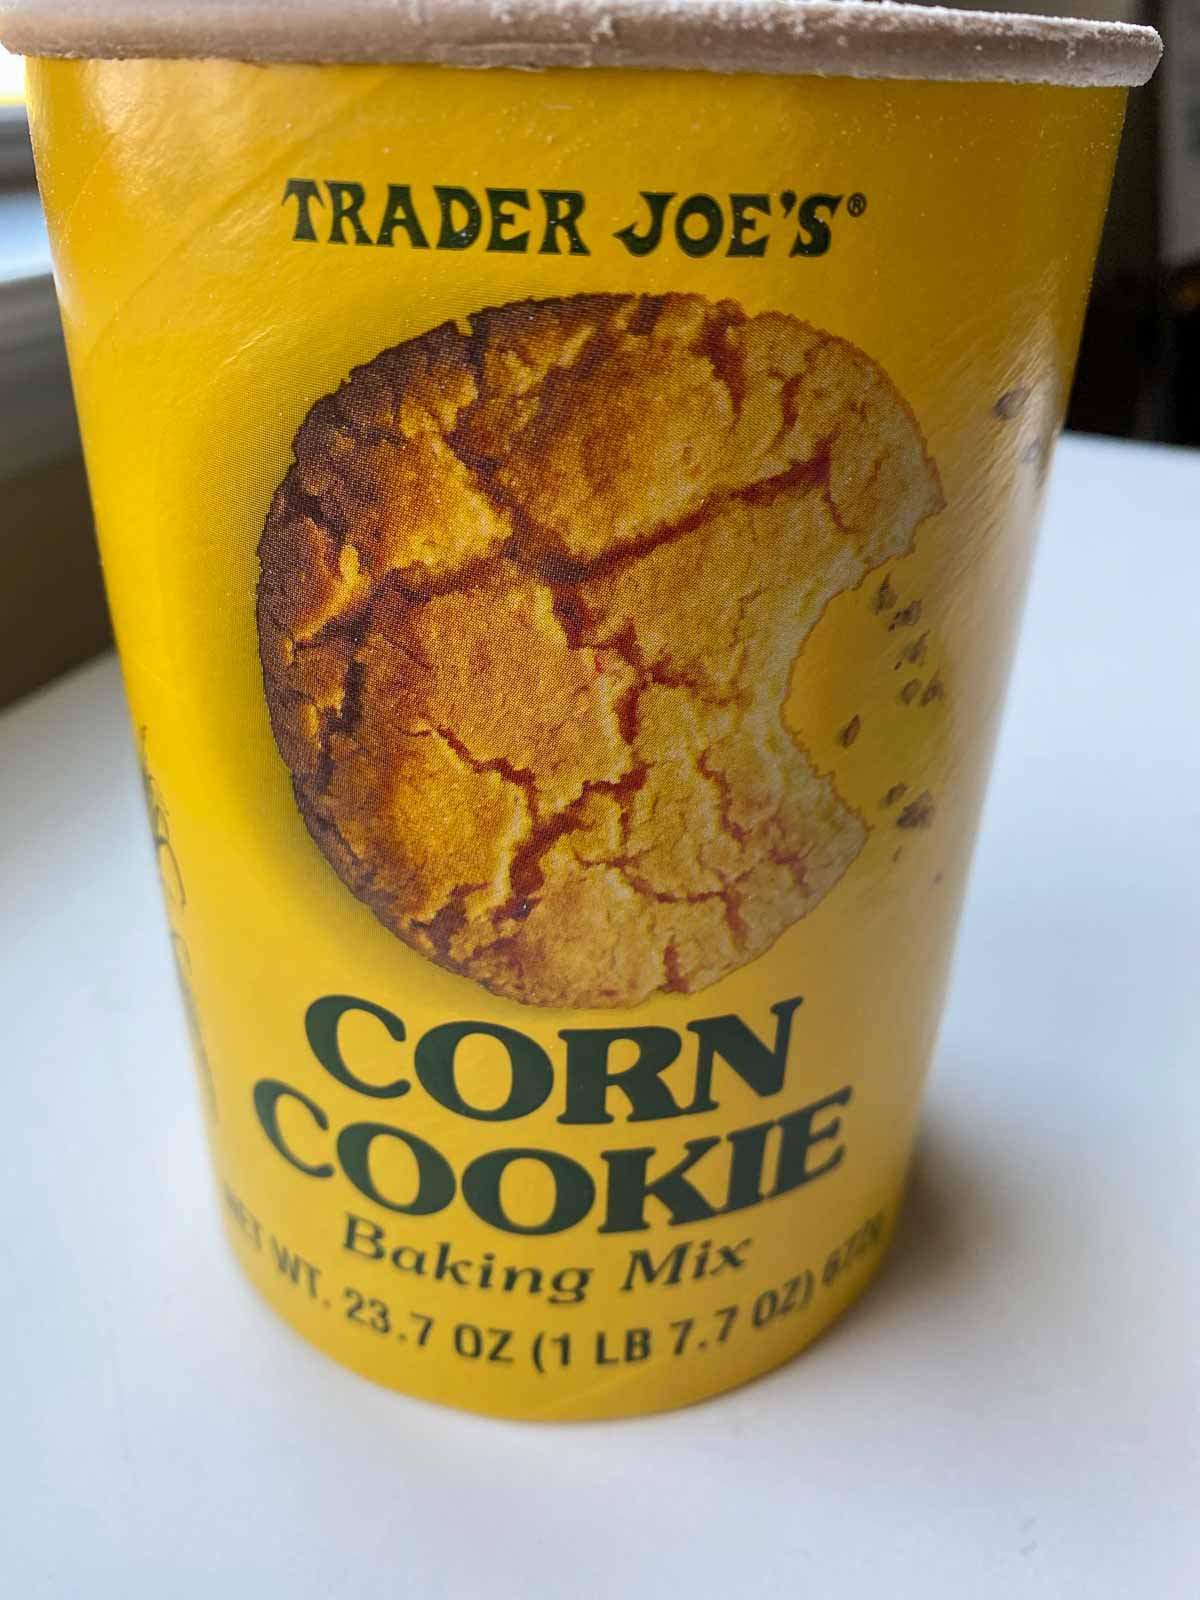 Trader Joe's corn cookie baking mix tub